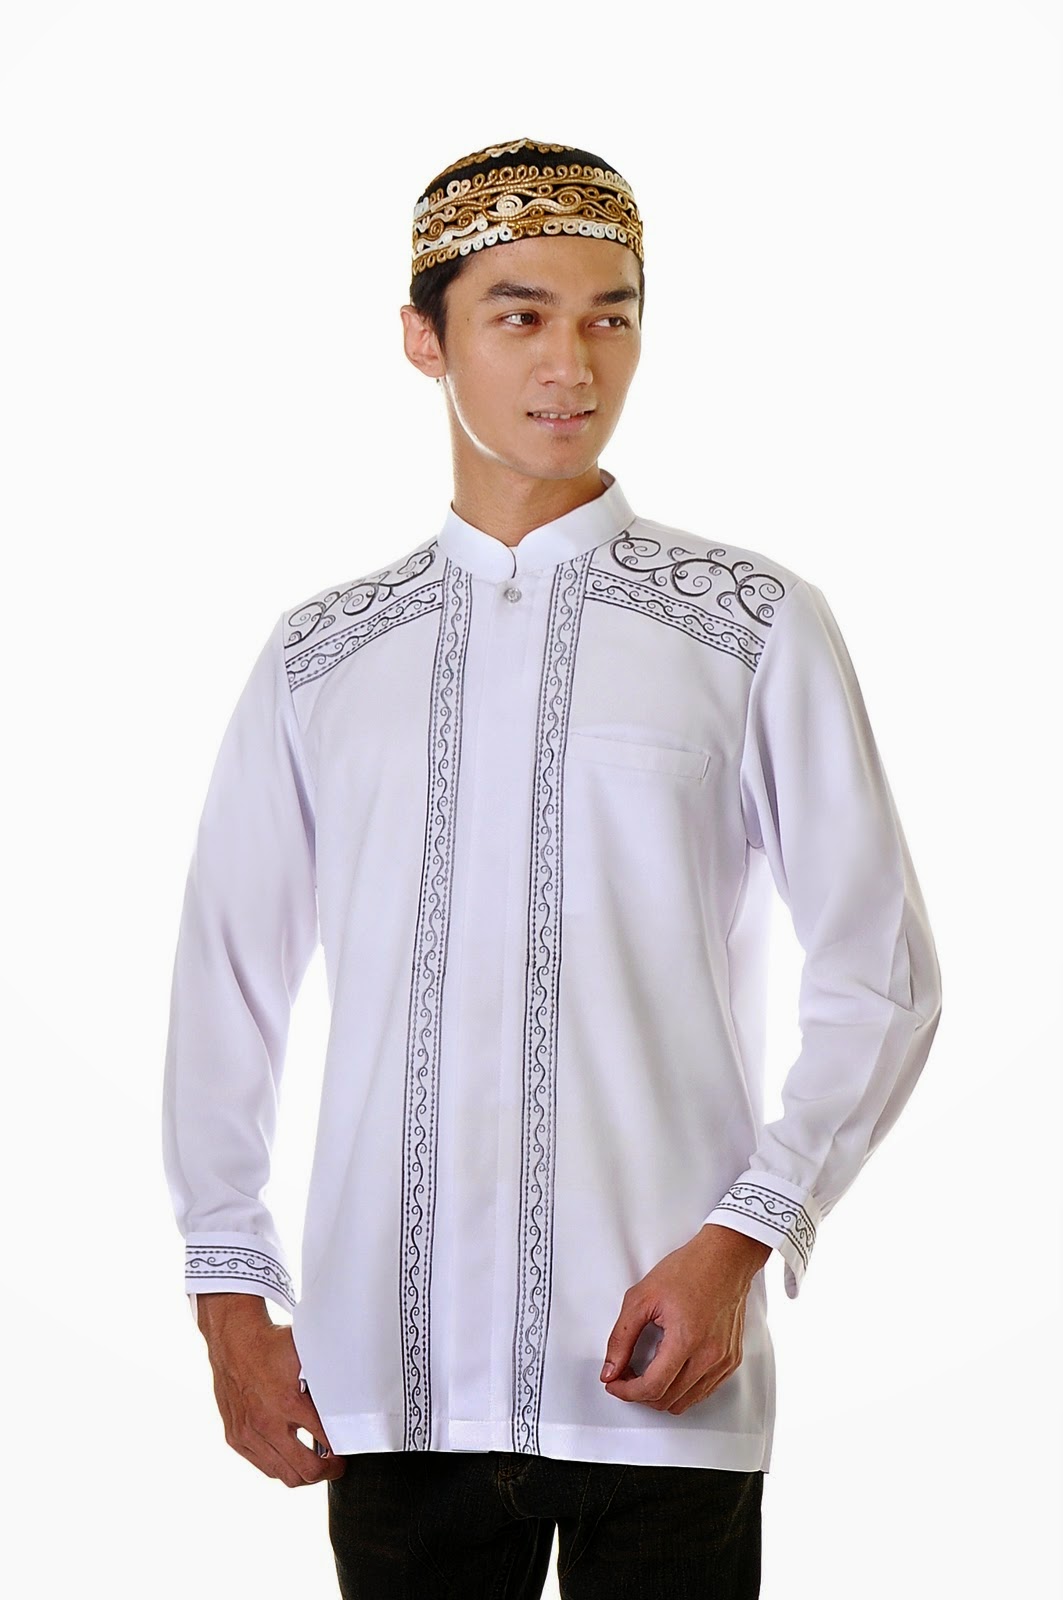 20 Contoh Model Baju Muslim Pria Terbaik 2015